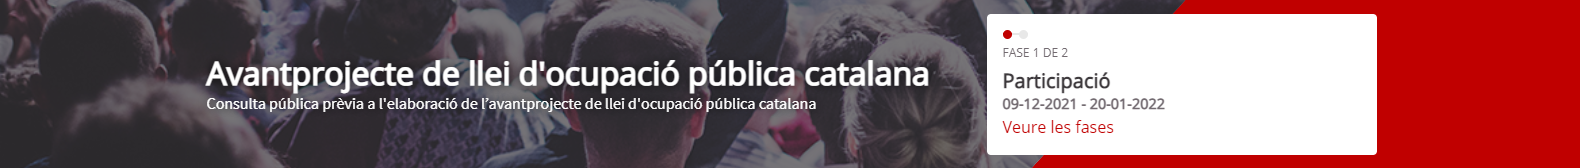 Avantprojecte de llei d’ocupació pública catalana (Acció #ONÉSLANTROPOLOGIA)